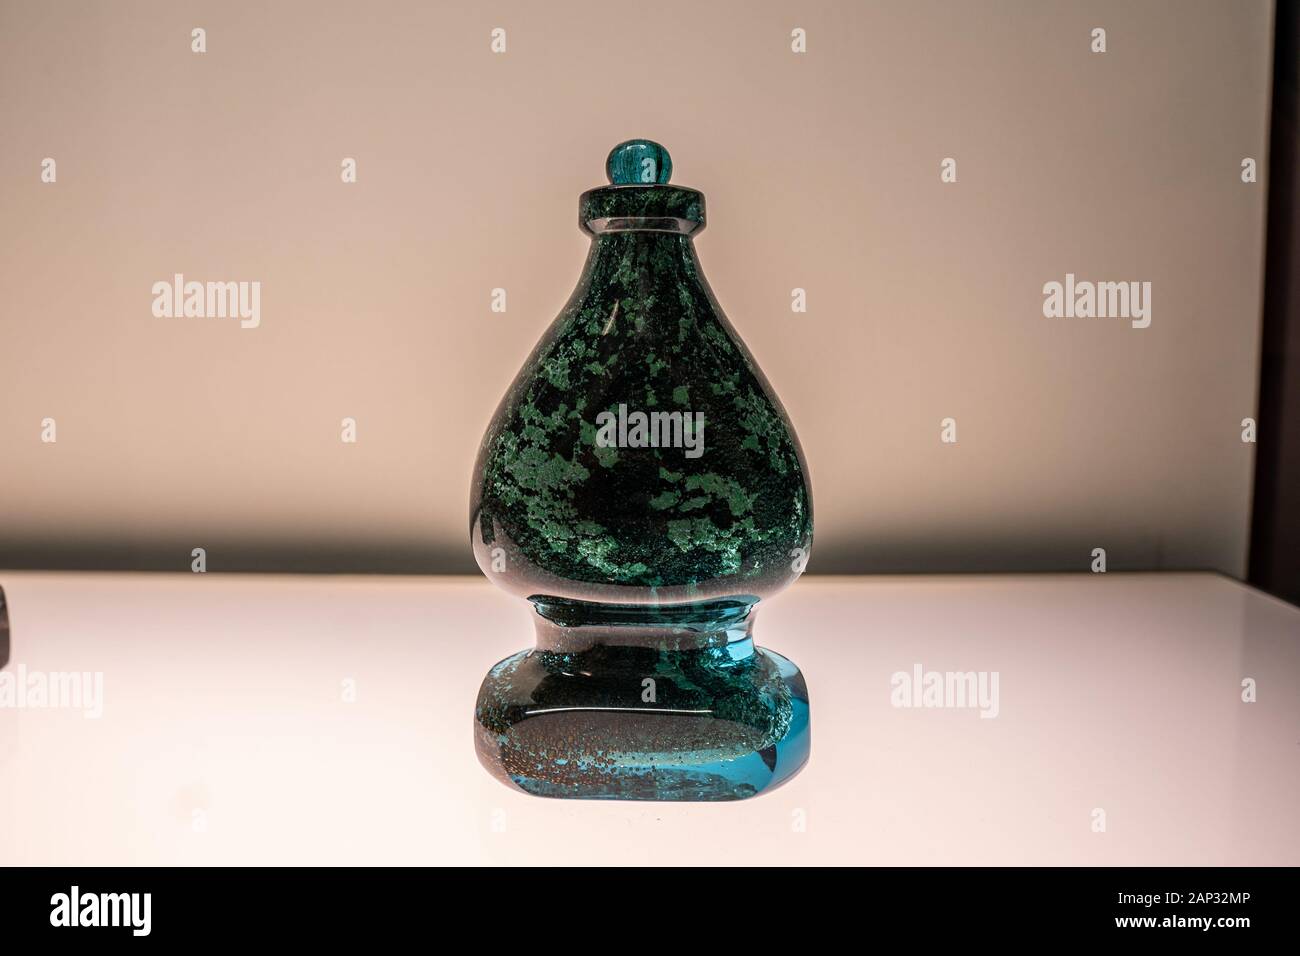 glas bottle isolated on white background photography Stock Photo